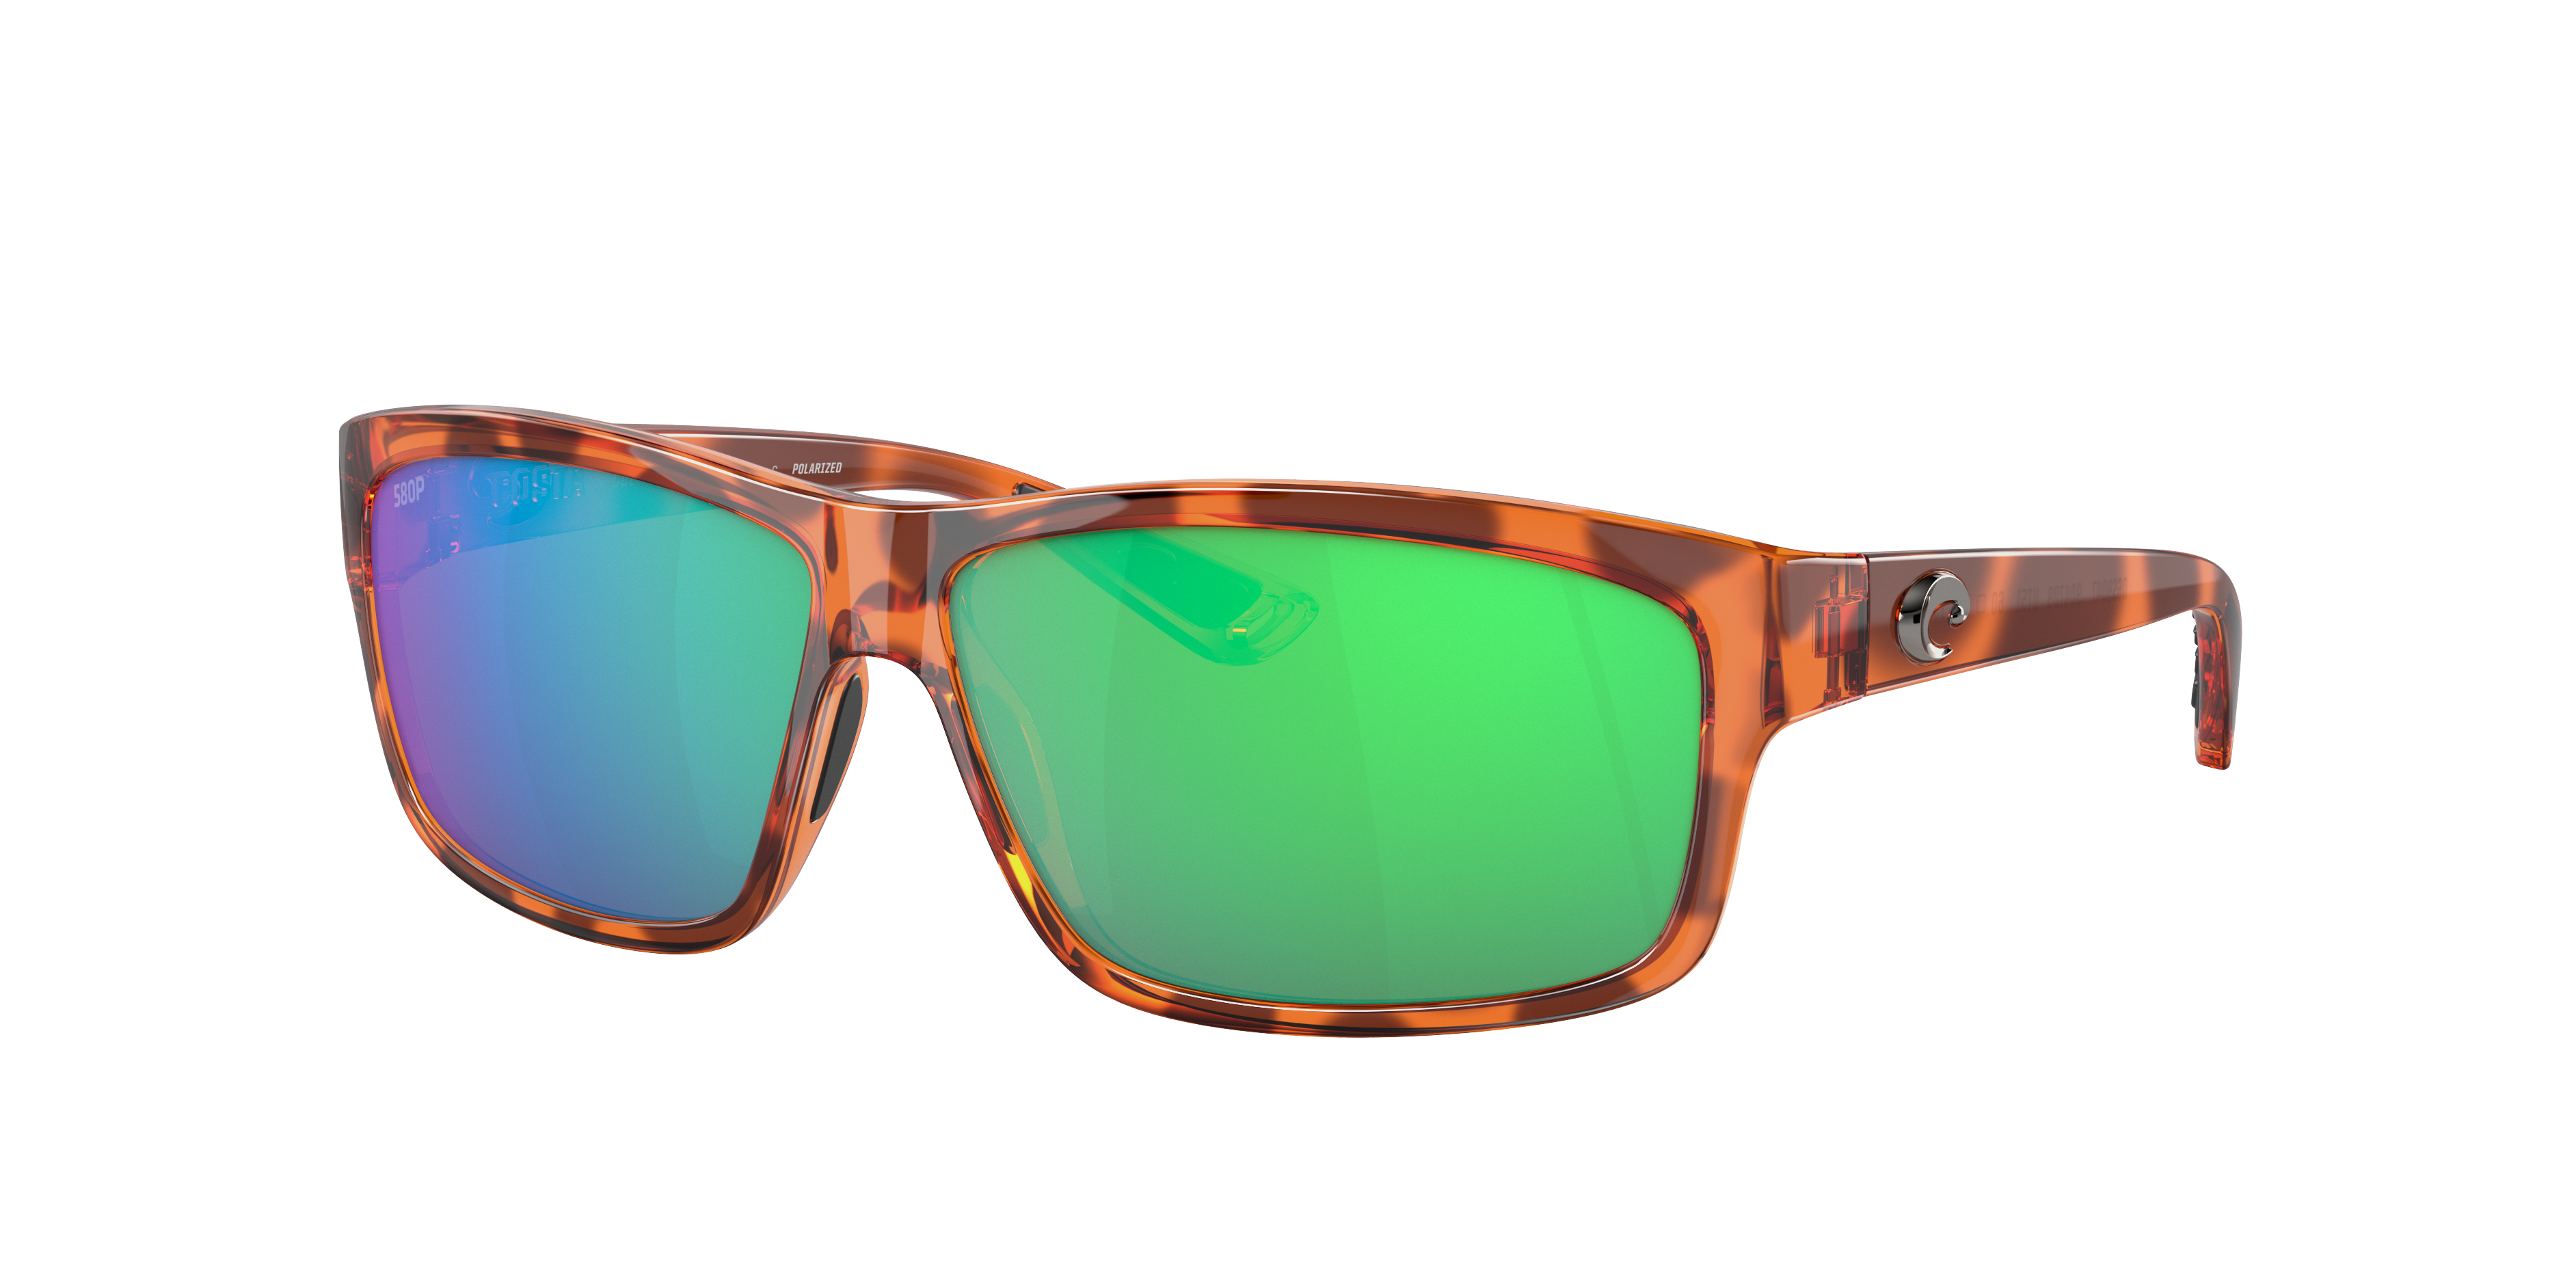 costa cut 580p sunglasses